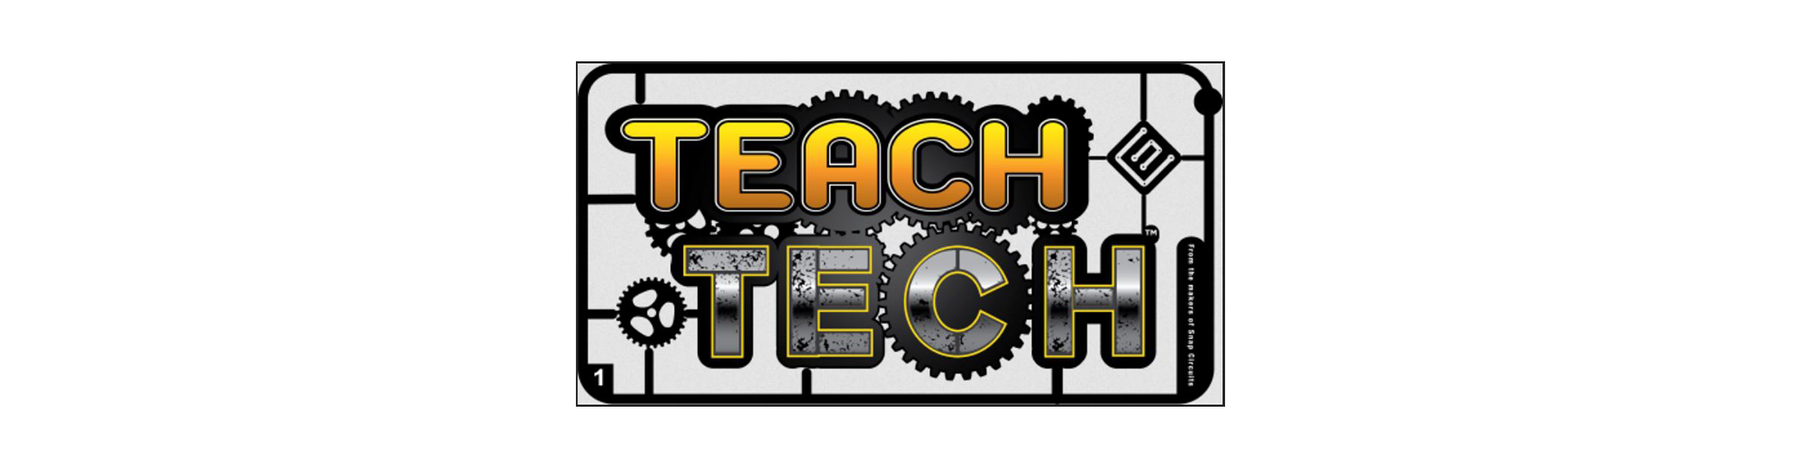 STEM Toys for the Summer - Elenco Teach Tech